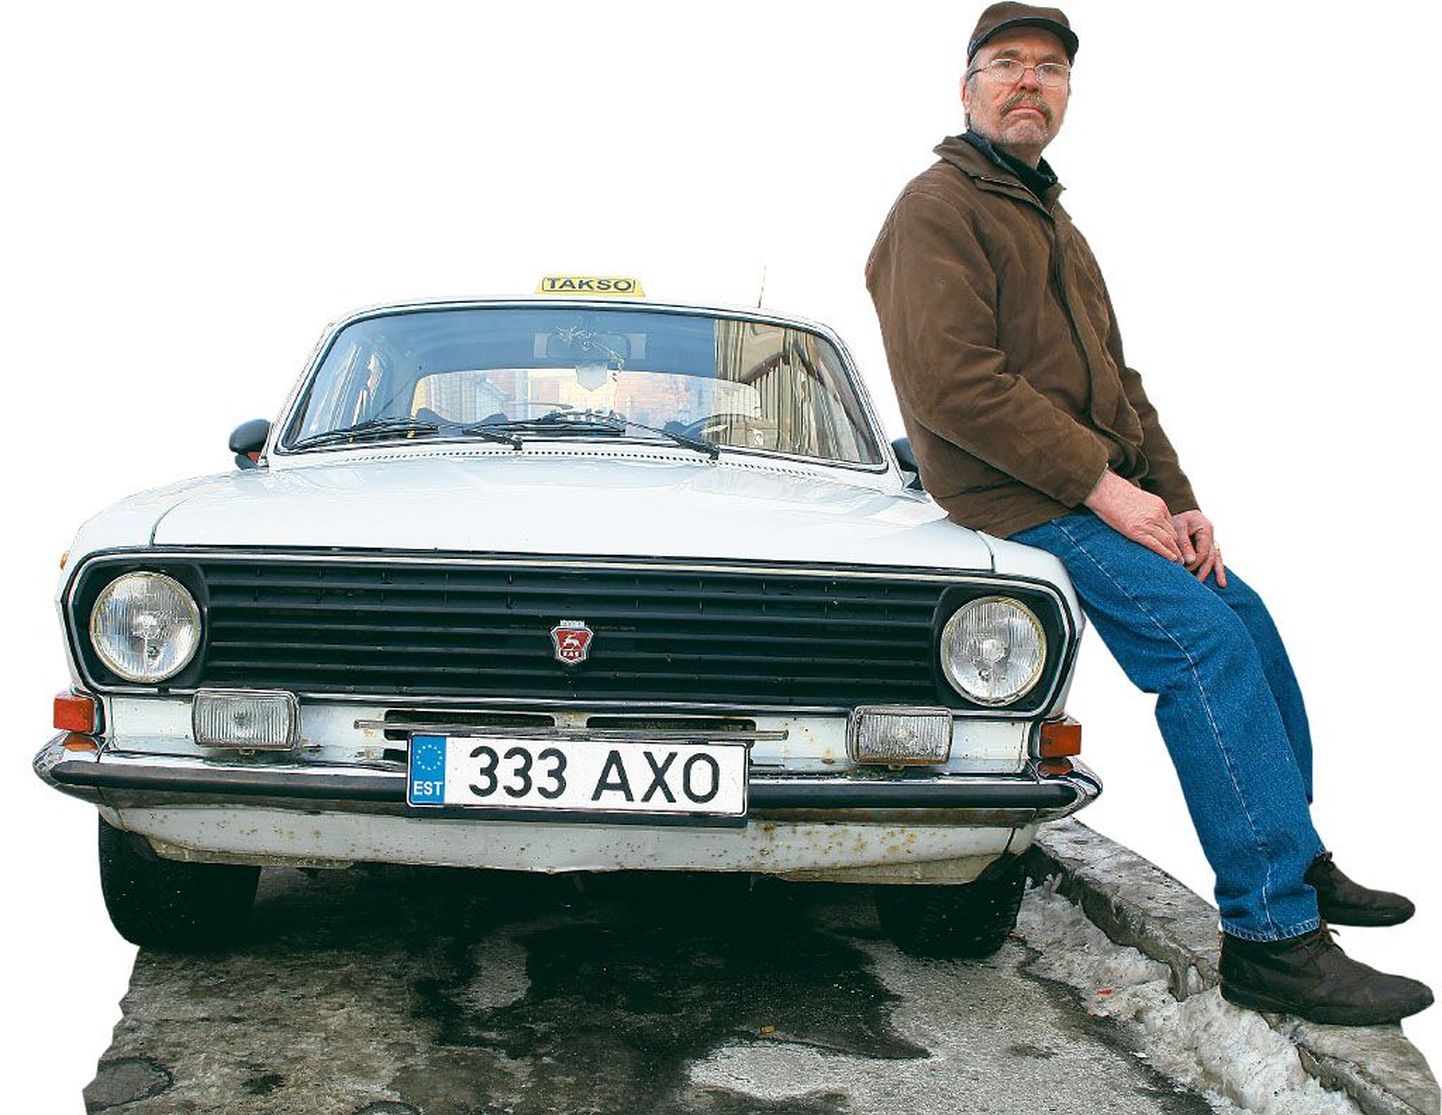 1991. aasta valge Volgaga sõidab Peeter Saar taksot kuuendat aastat. Kui masin sel kevadel ülevaatusel läbi saab, venitab veel aastakese sõita ja siis läheb Eesti viimane Volga takso välja teenitud pensionile.